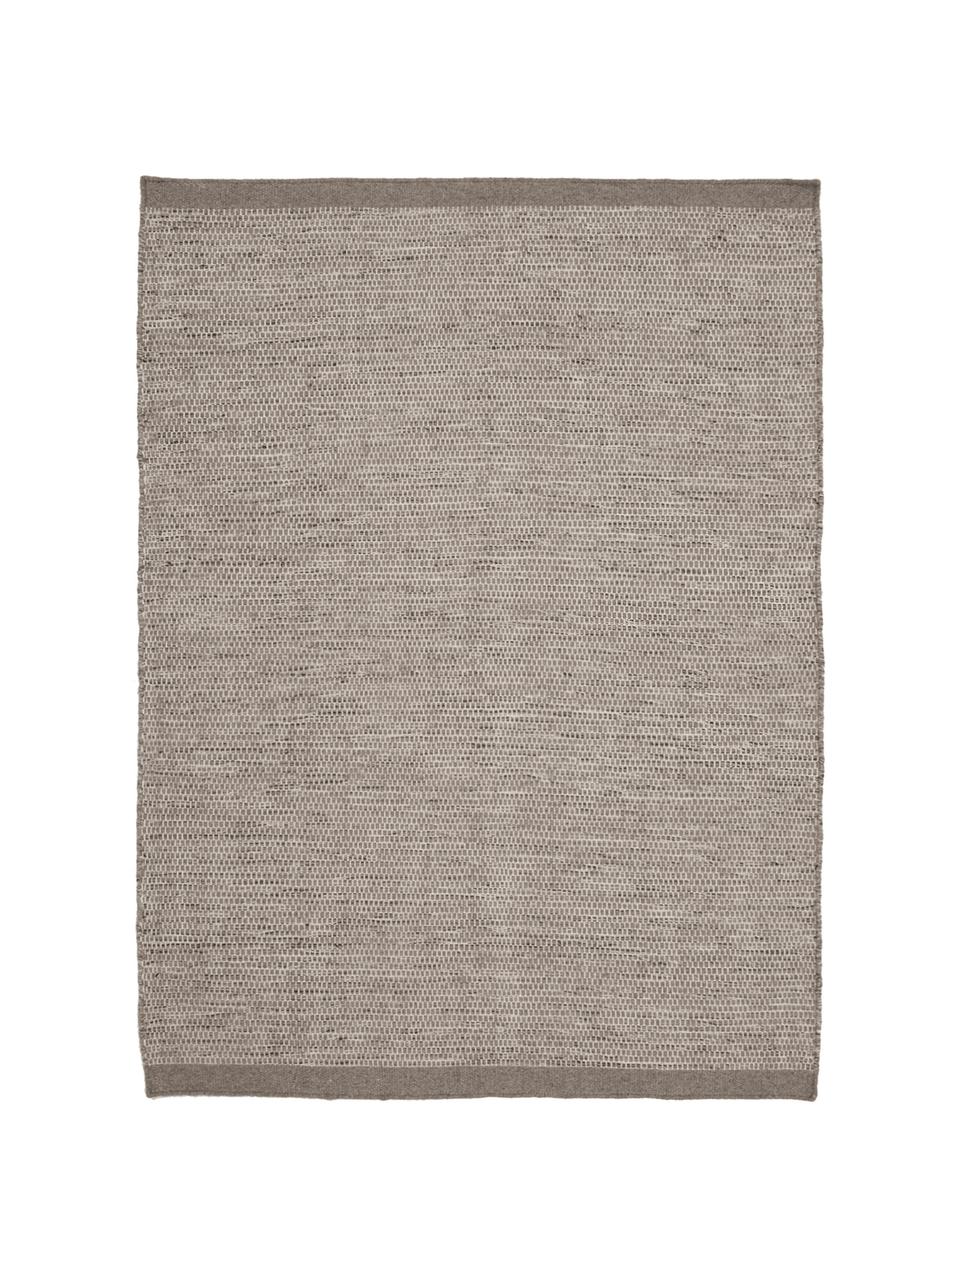 Tappeto in lana tonalità grigie tessuto a mano Asko, Retro: cotone, Grigio chiaro, grigio, Larg. 170 x Lung. 240 cm  (taglia M)